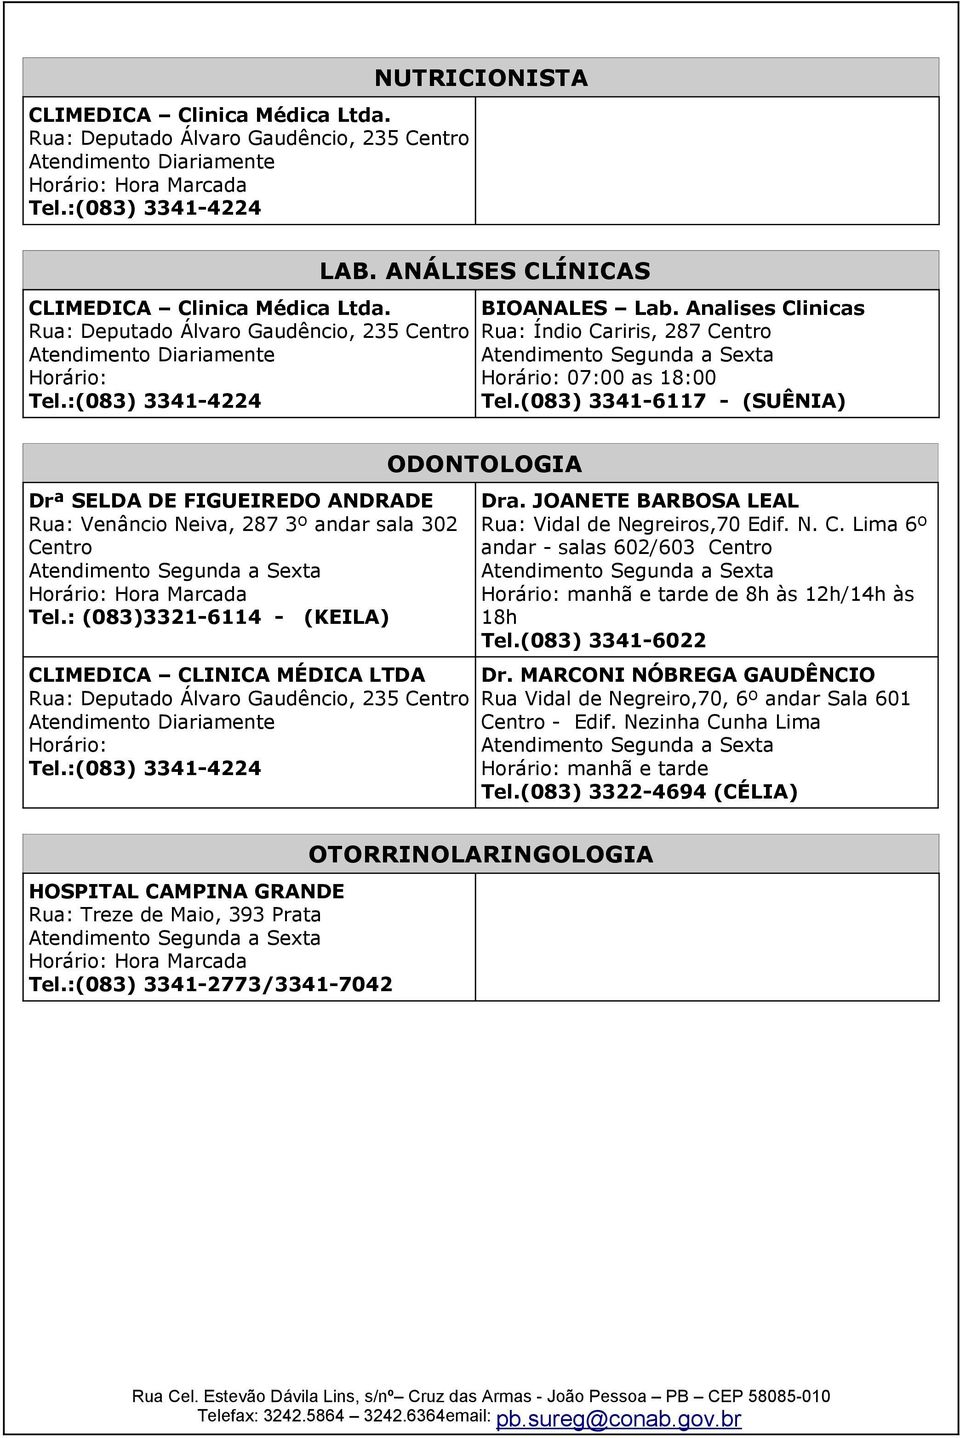 Analises Clinicas Rua: Índio Cariris, 287 Centro Atendimento Horário: 07:00 as 18:00 Tel.